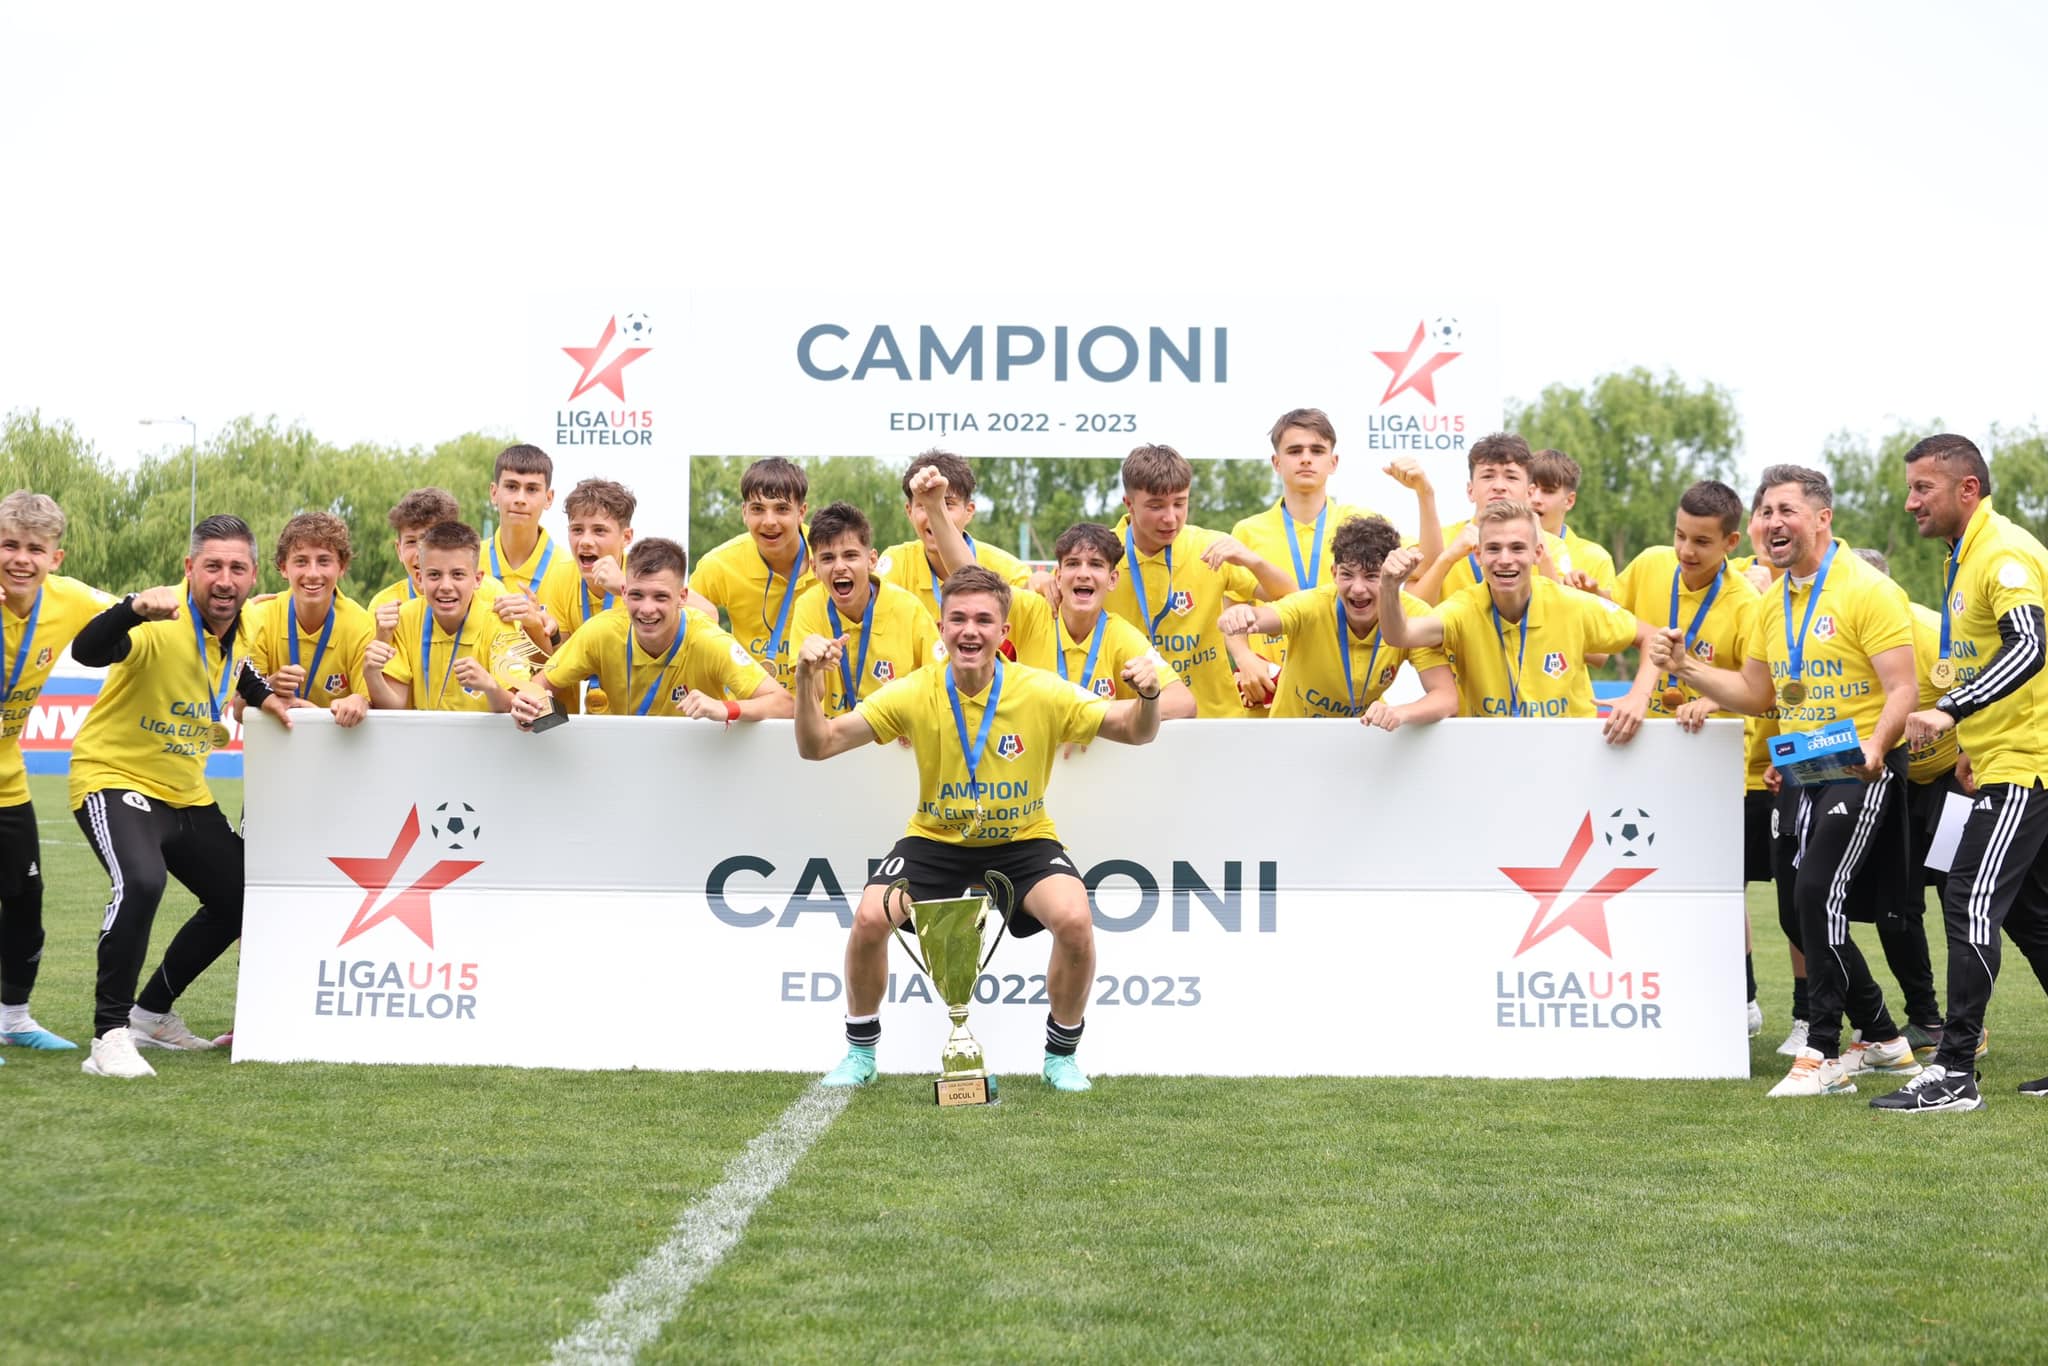 Viitorul sună bine pentru „U” Cluj. Micii „studenți” au devenit campioni naționali în Liga Elitelor U15